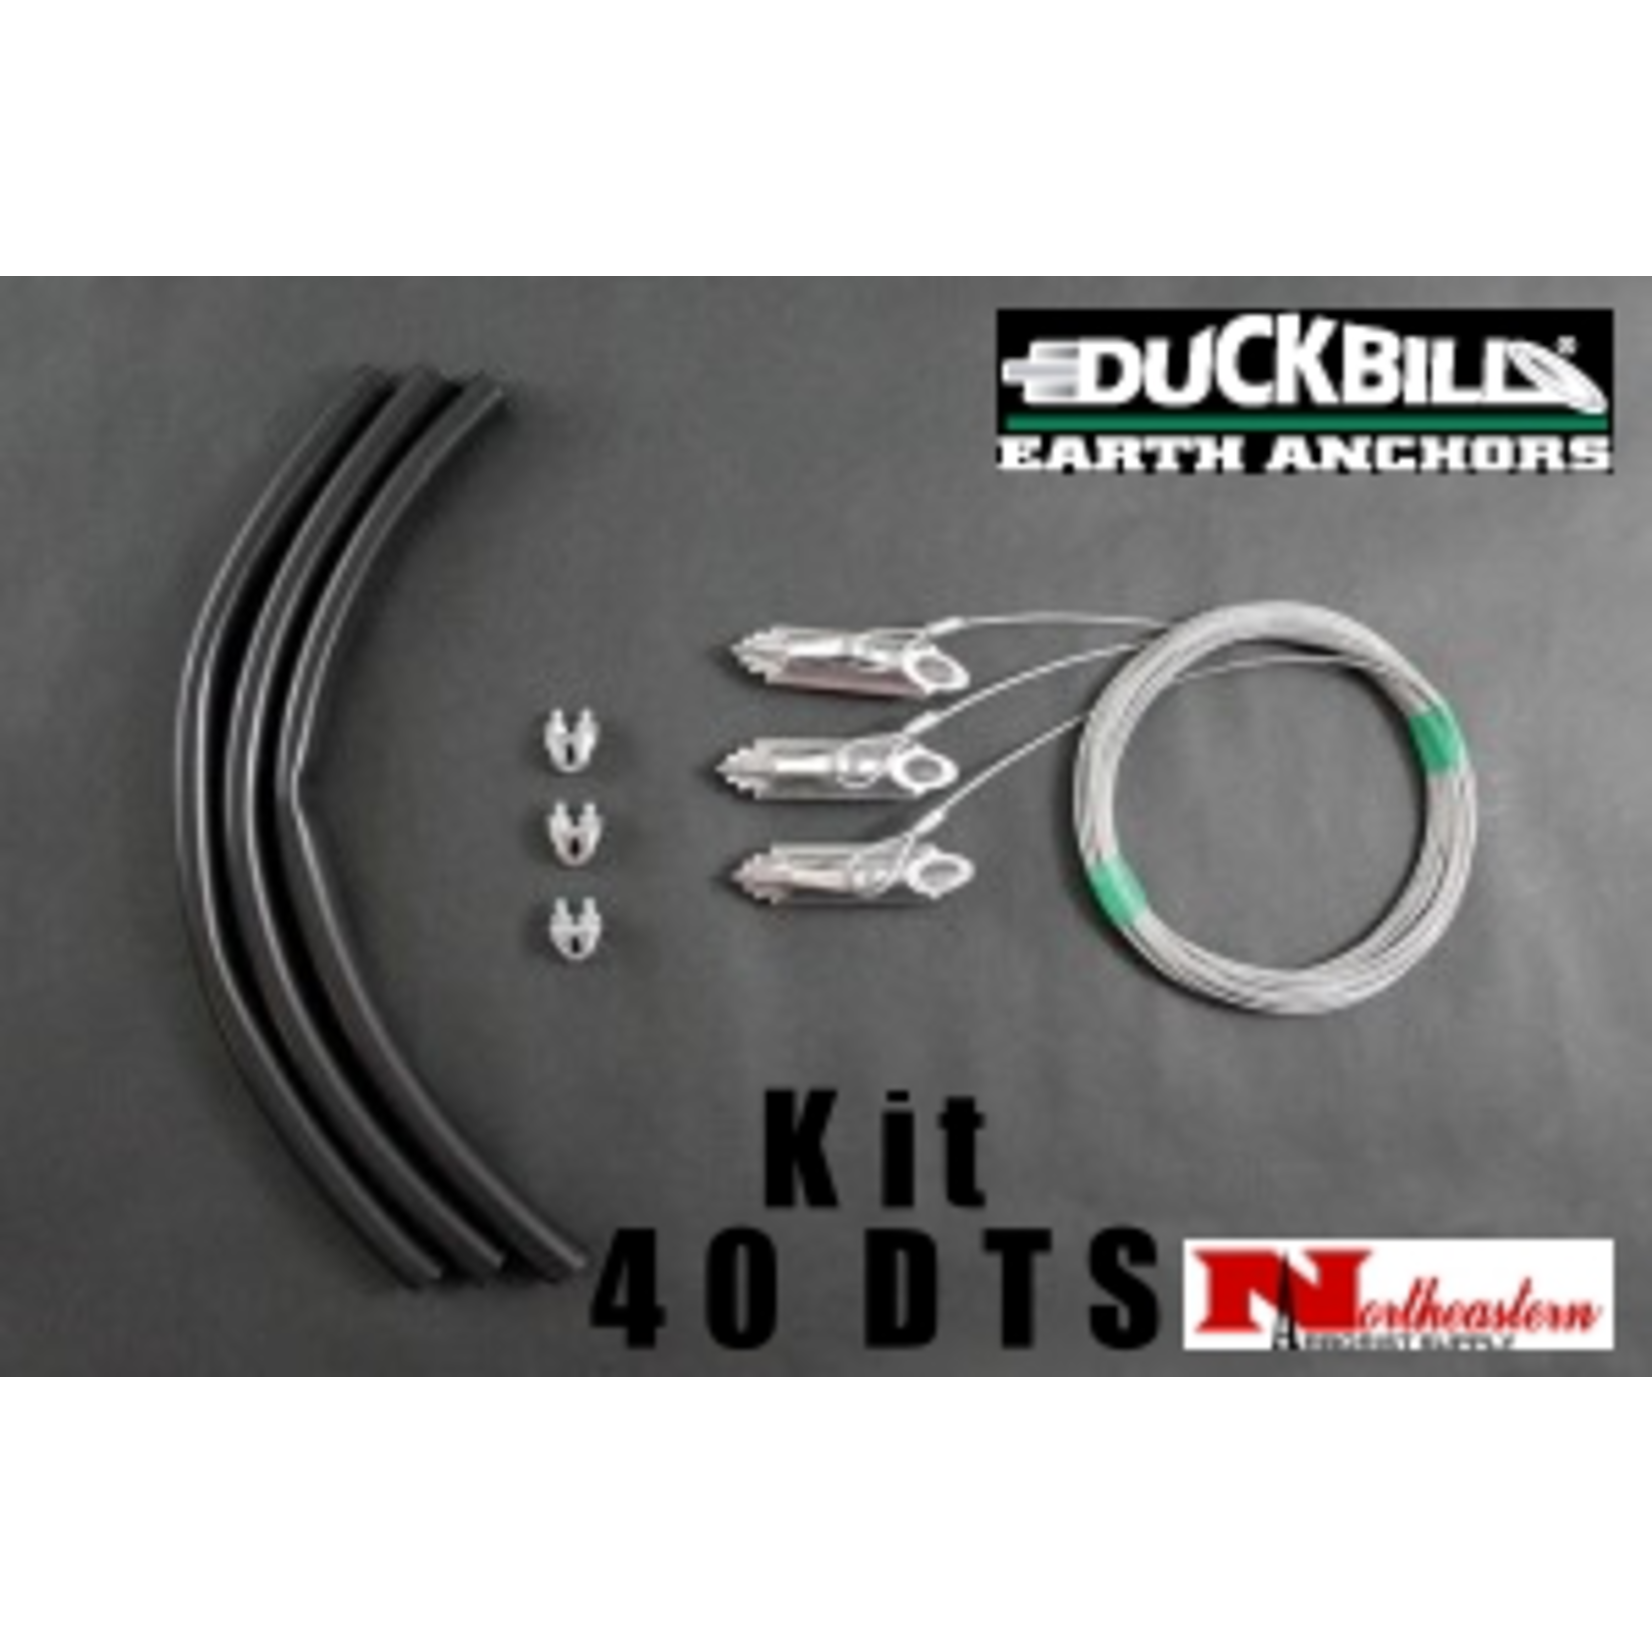 DuckBill Anchor Duckbill Kit 40DTS for up to 3" Diameter Trees